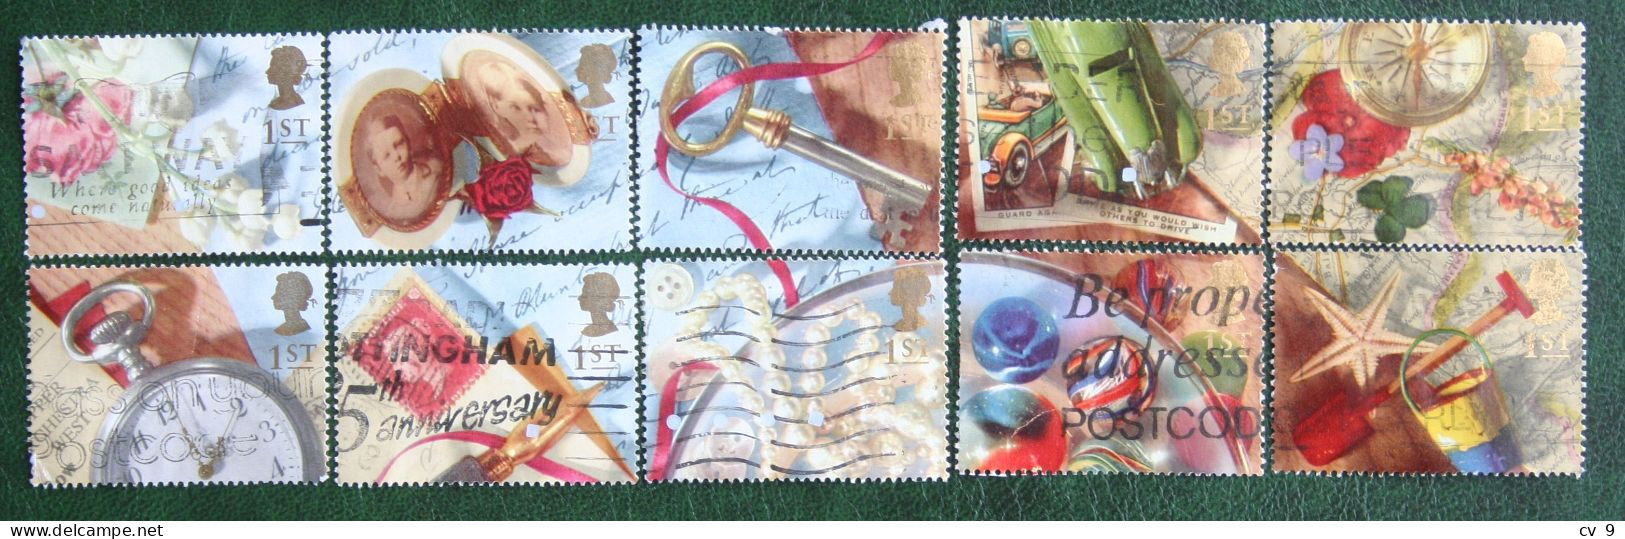 Greetings Booklet Stamps Memories (Mi 1377-1386) 1992 Used Gebruikt Oblitere ENGLAND GRANDE-BRETAGNE GB GREAT BRITAIN - Usados